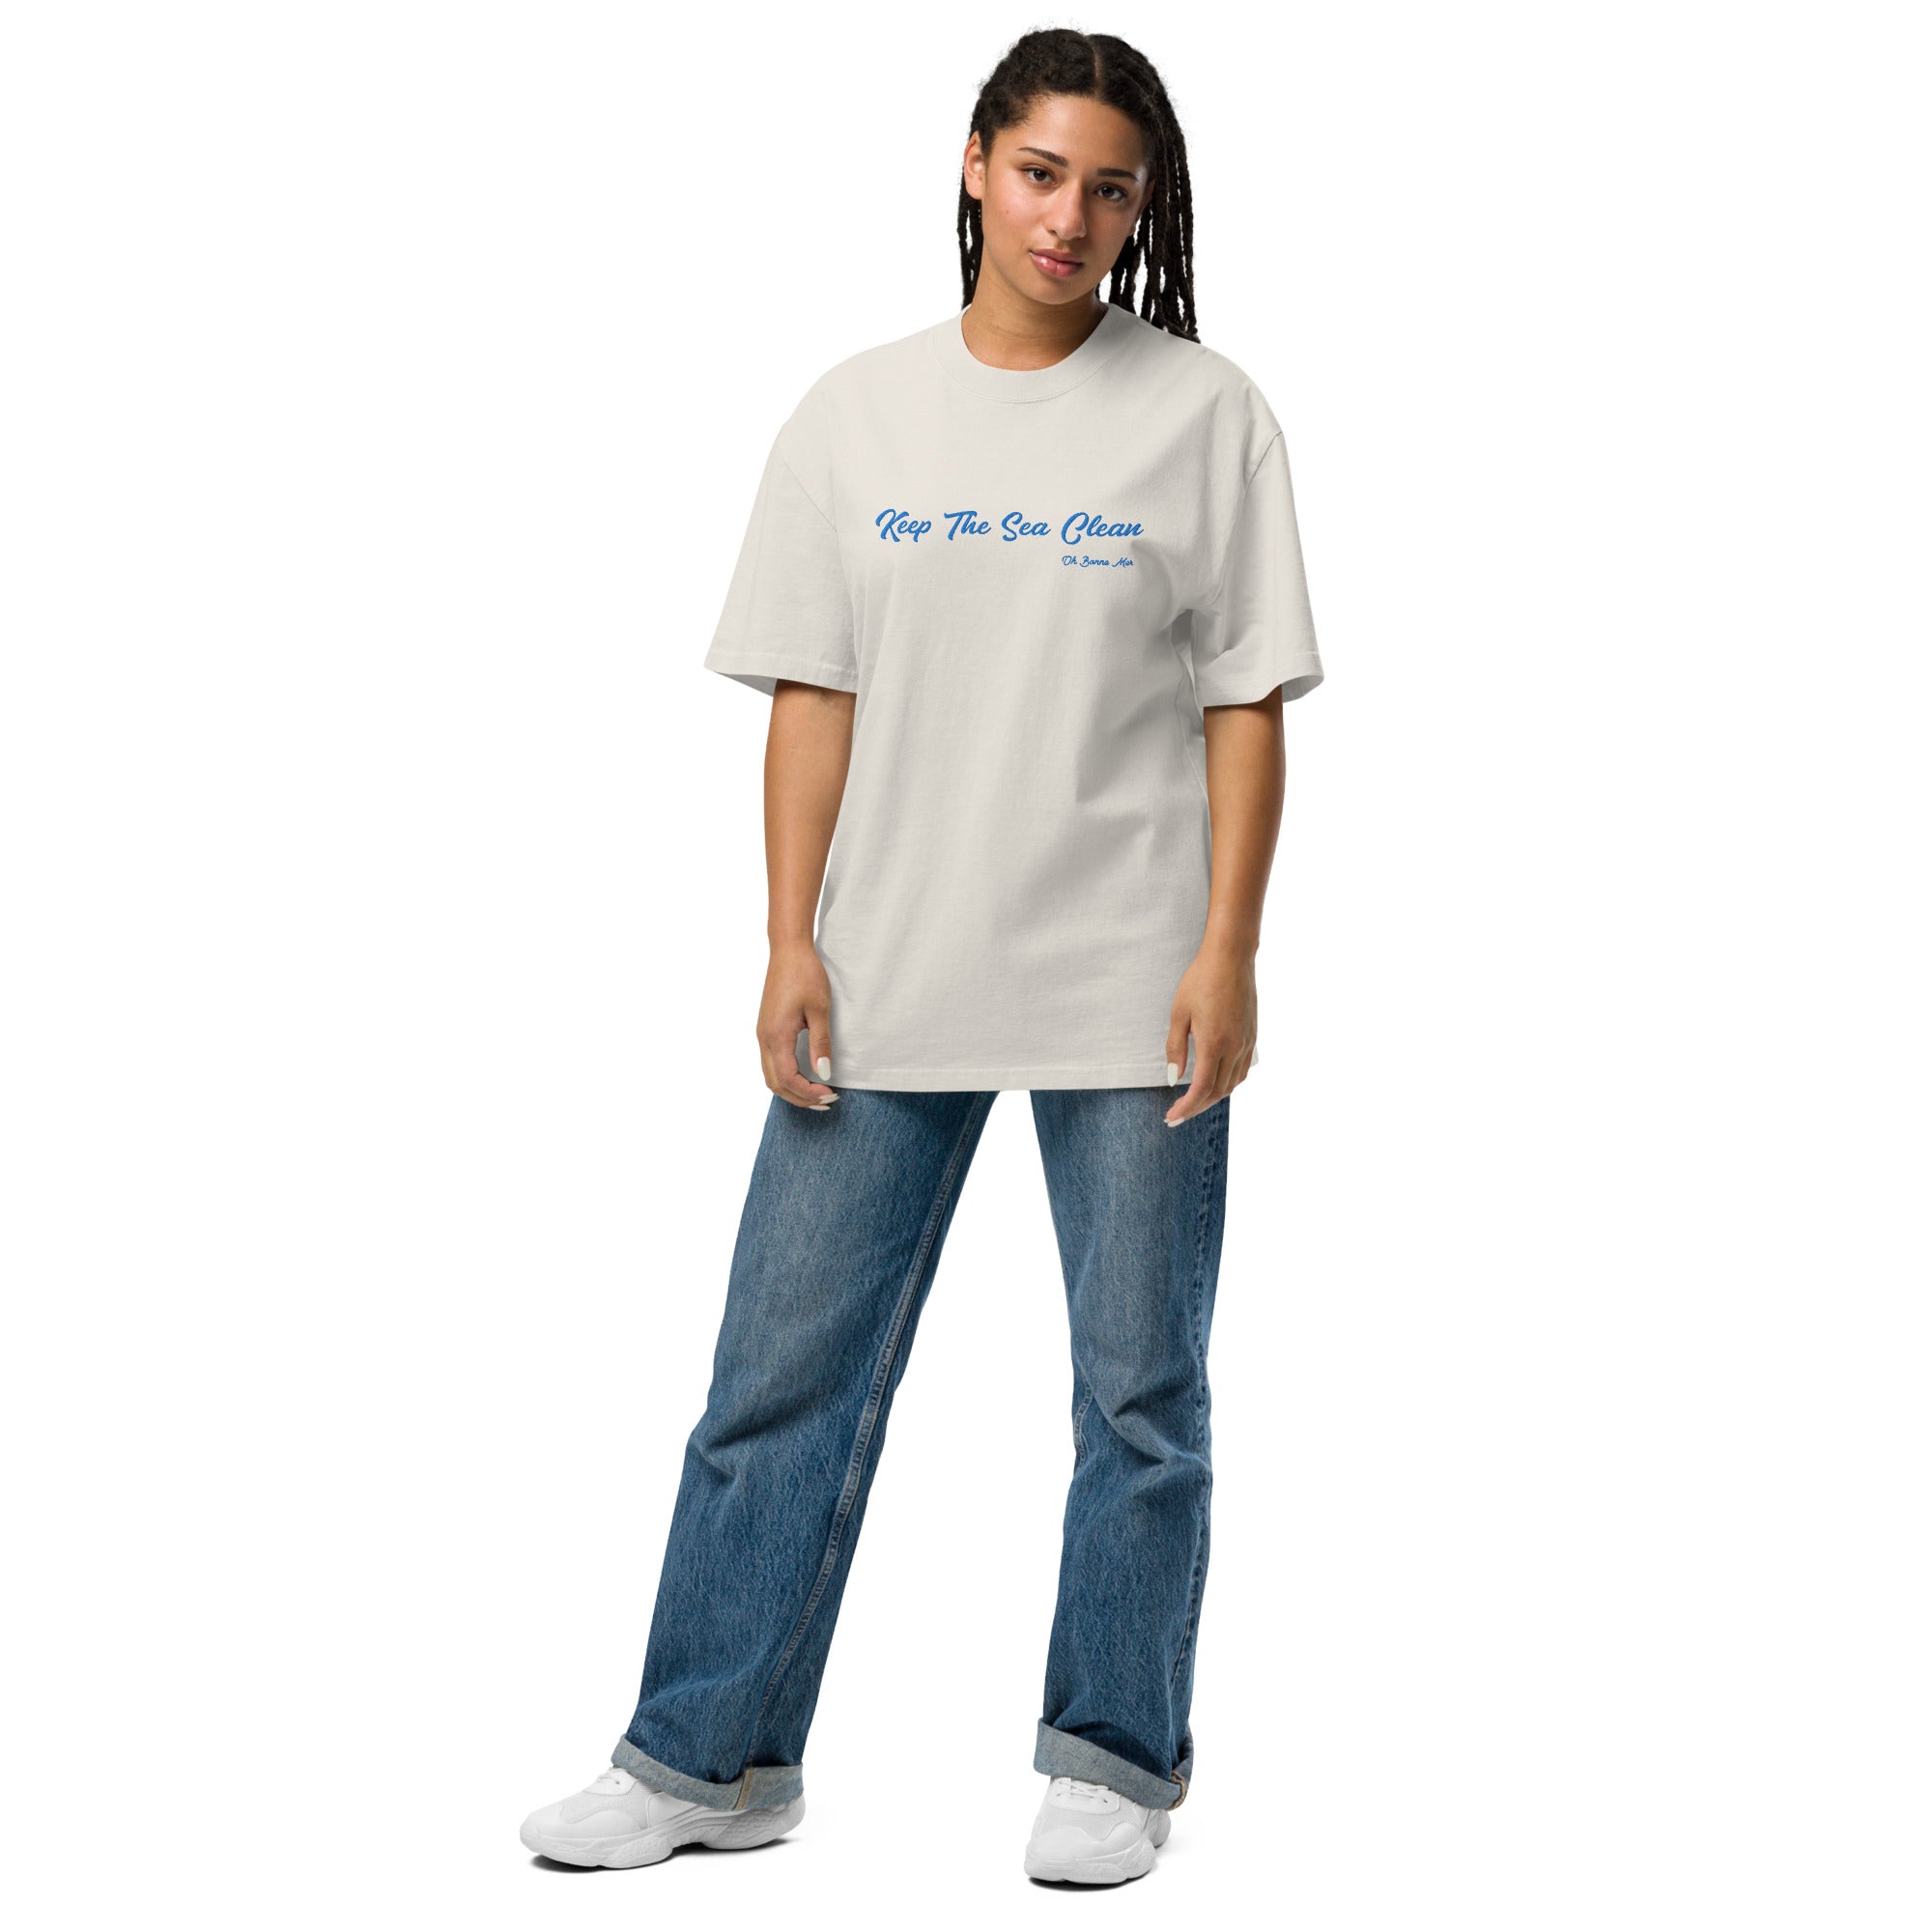 T-shirt oversize épais en coton Keep The Sea Clean bleu clair grand motif brodé